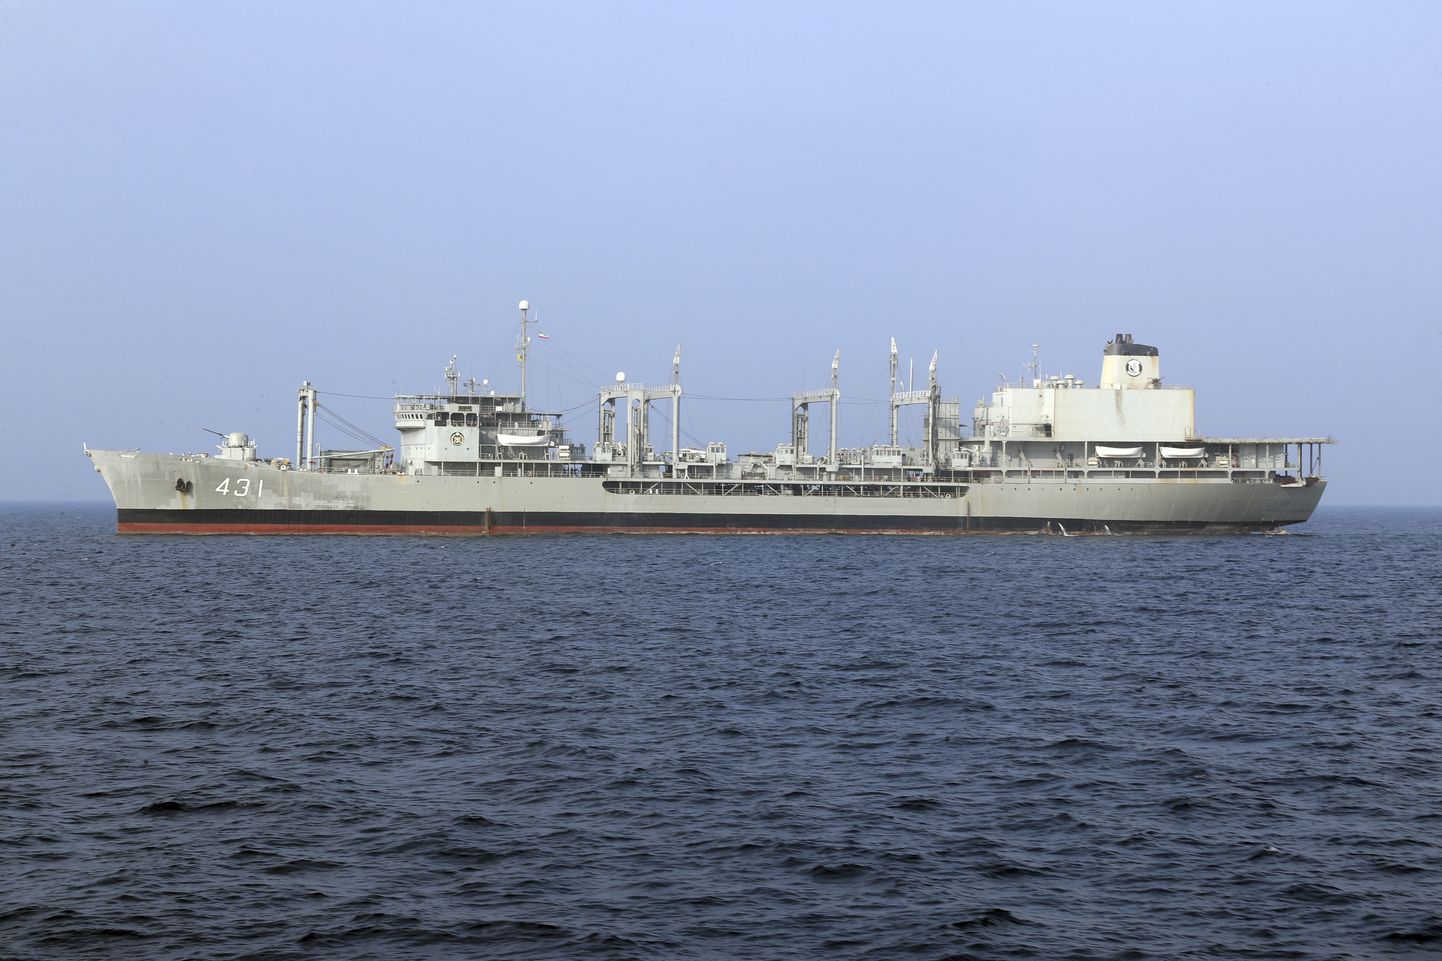 Iraani mereväe suurim sõjalaev, varustuslaev Kharq, mis uppus Omani lahes pärast pardal puhkenud põlengut.